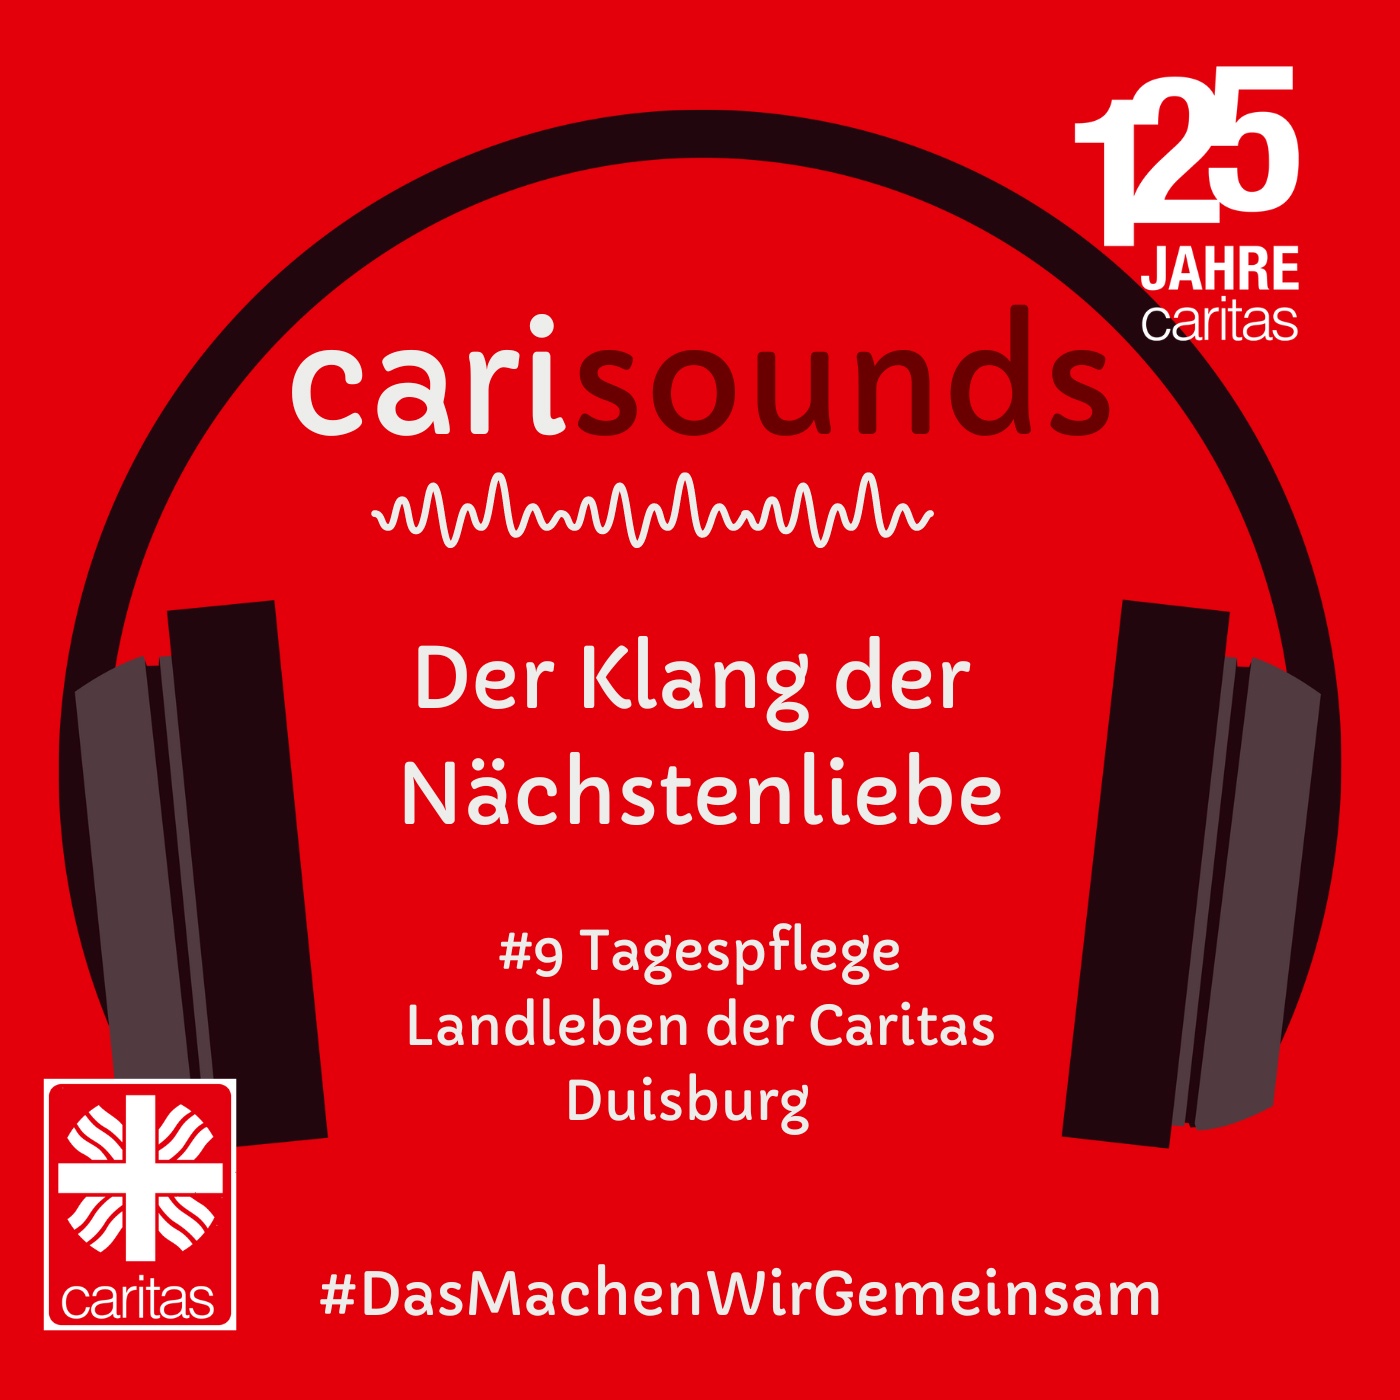 #9 carisounds - Der Klang der Nächstenliebe - Das Team der Tagespflege Landleben der Caritas Duisburg